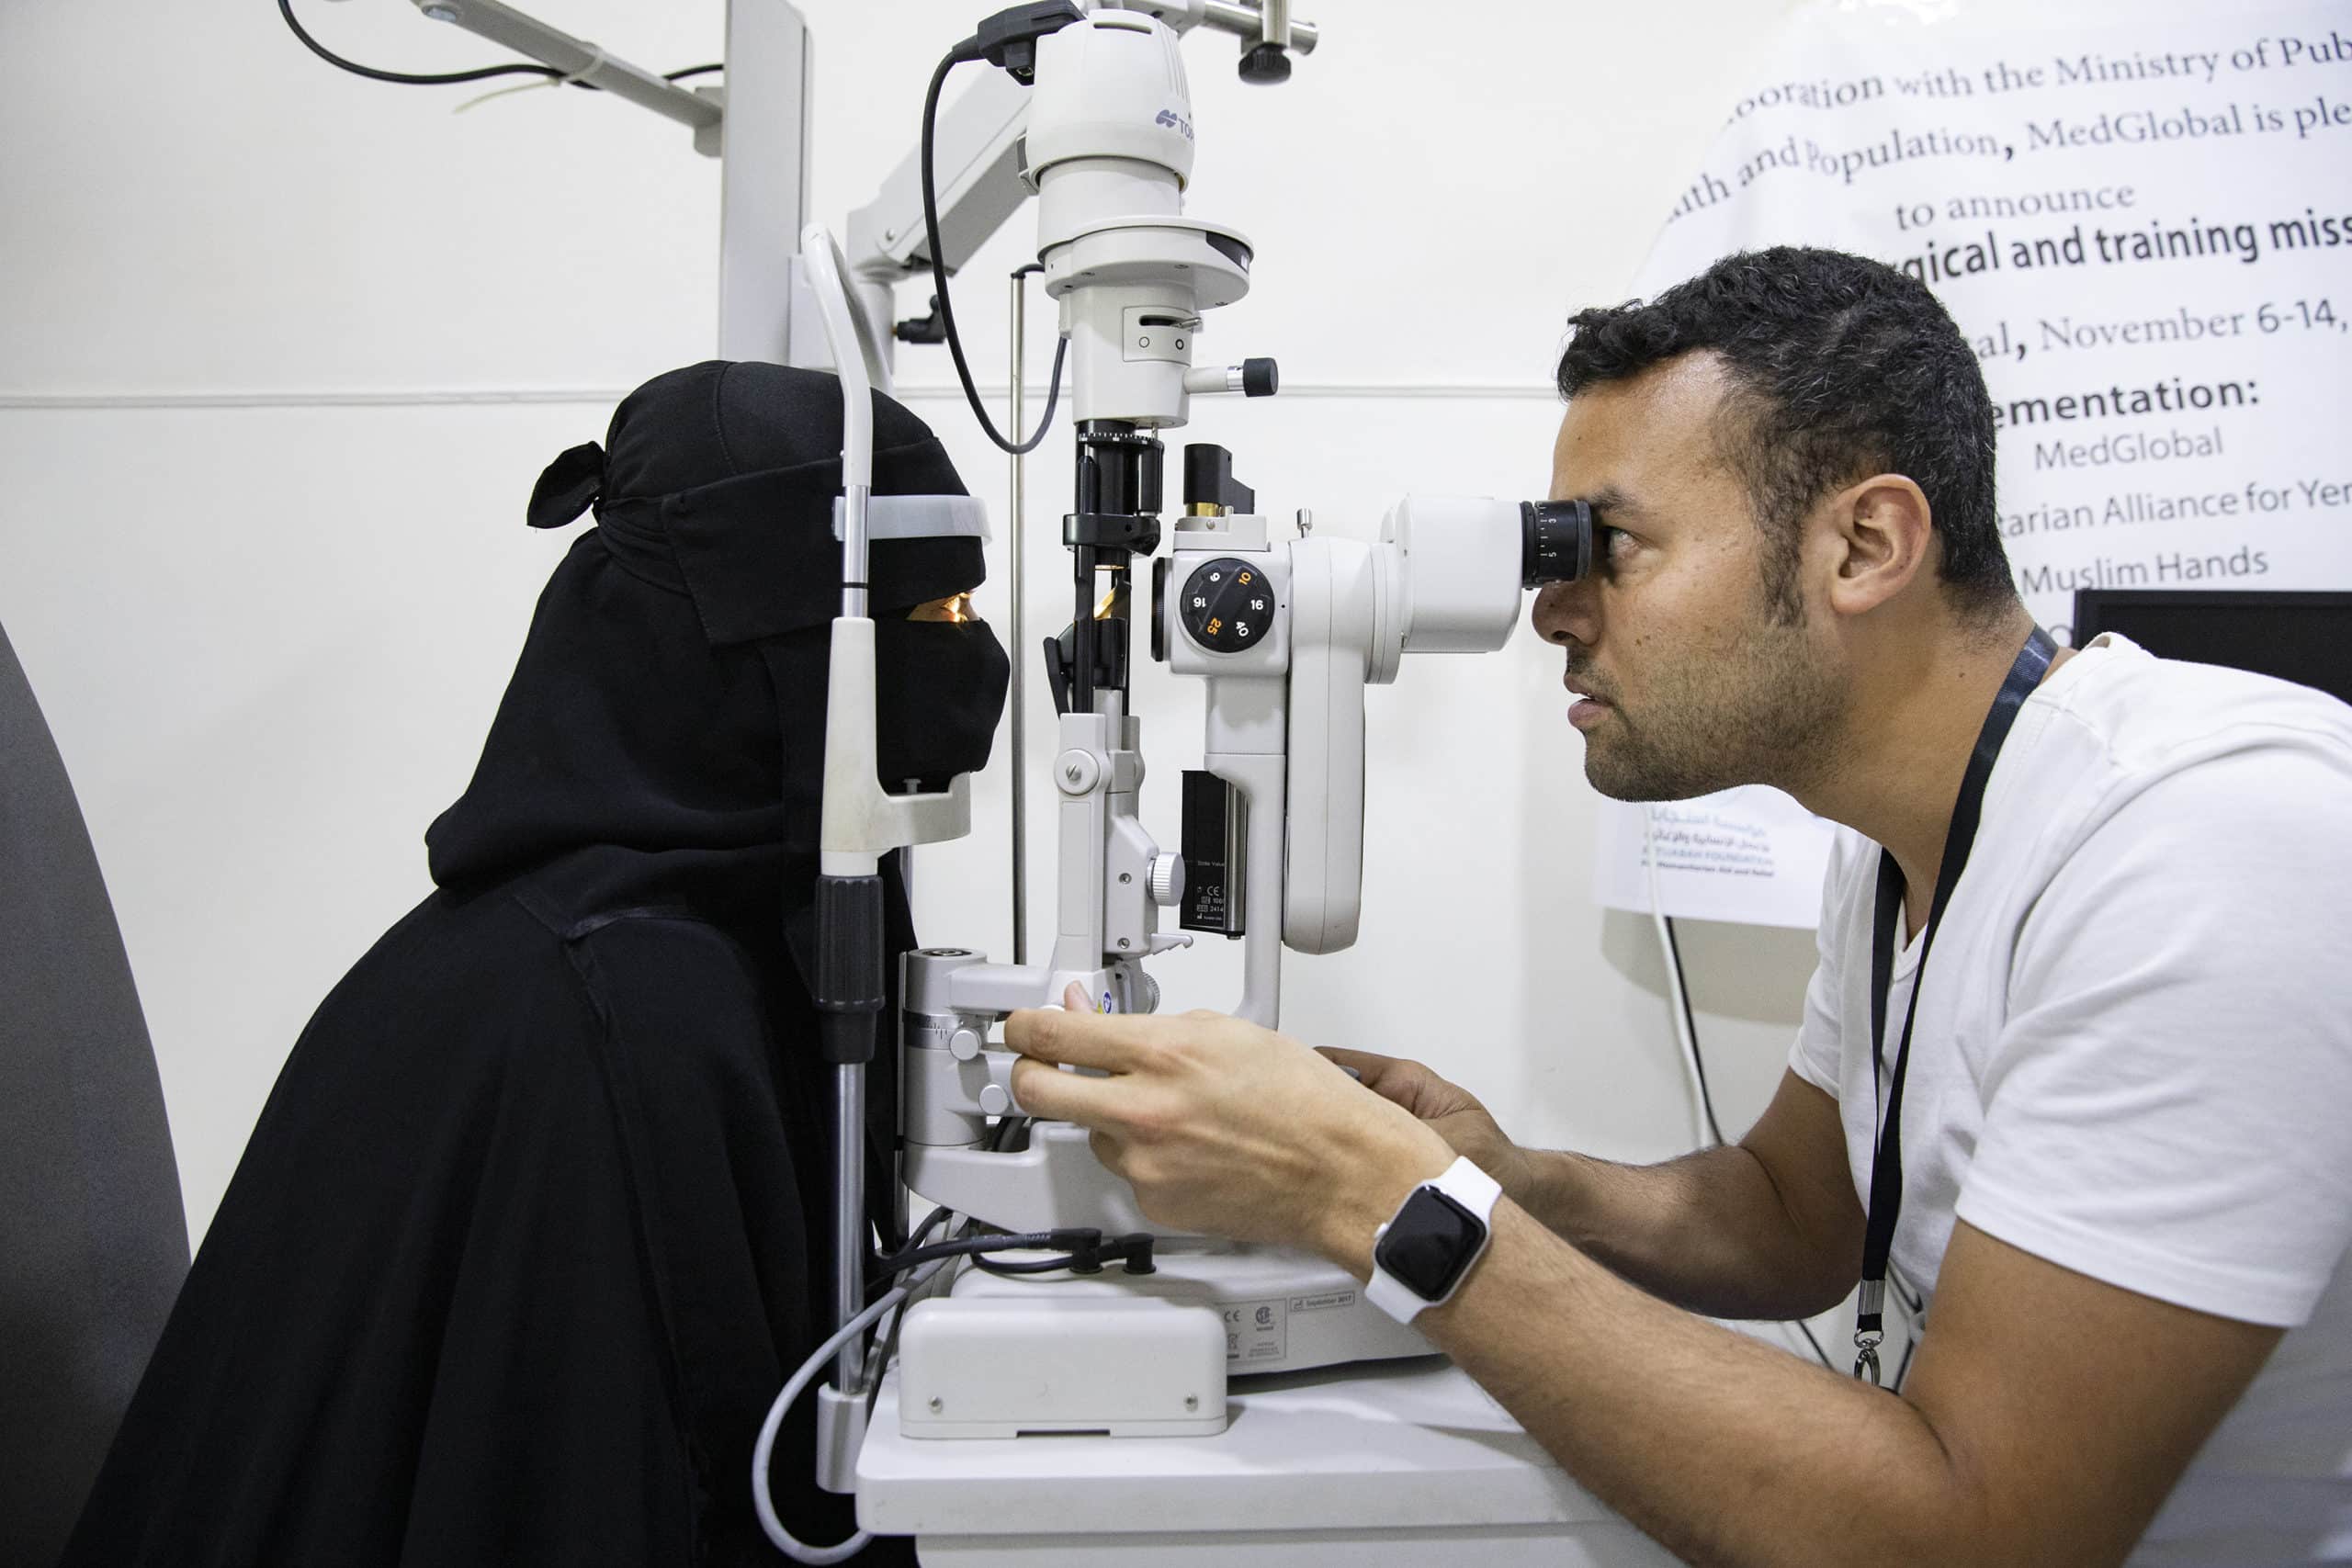 Doctor treating patient in Yemen